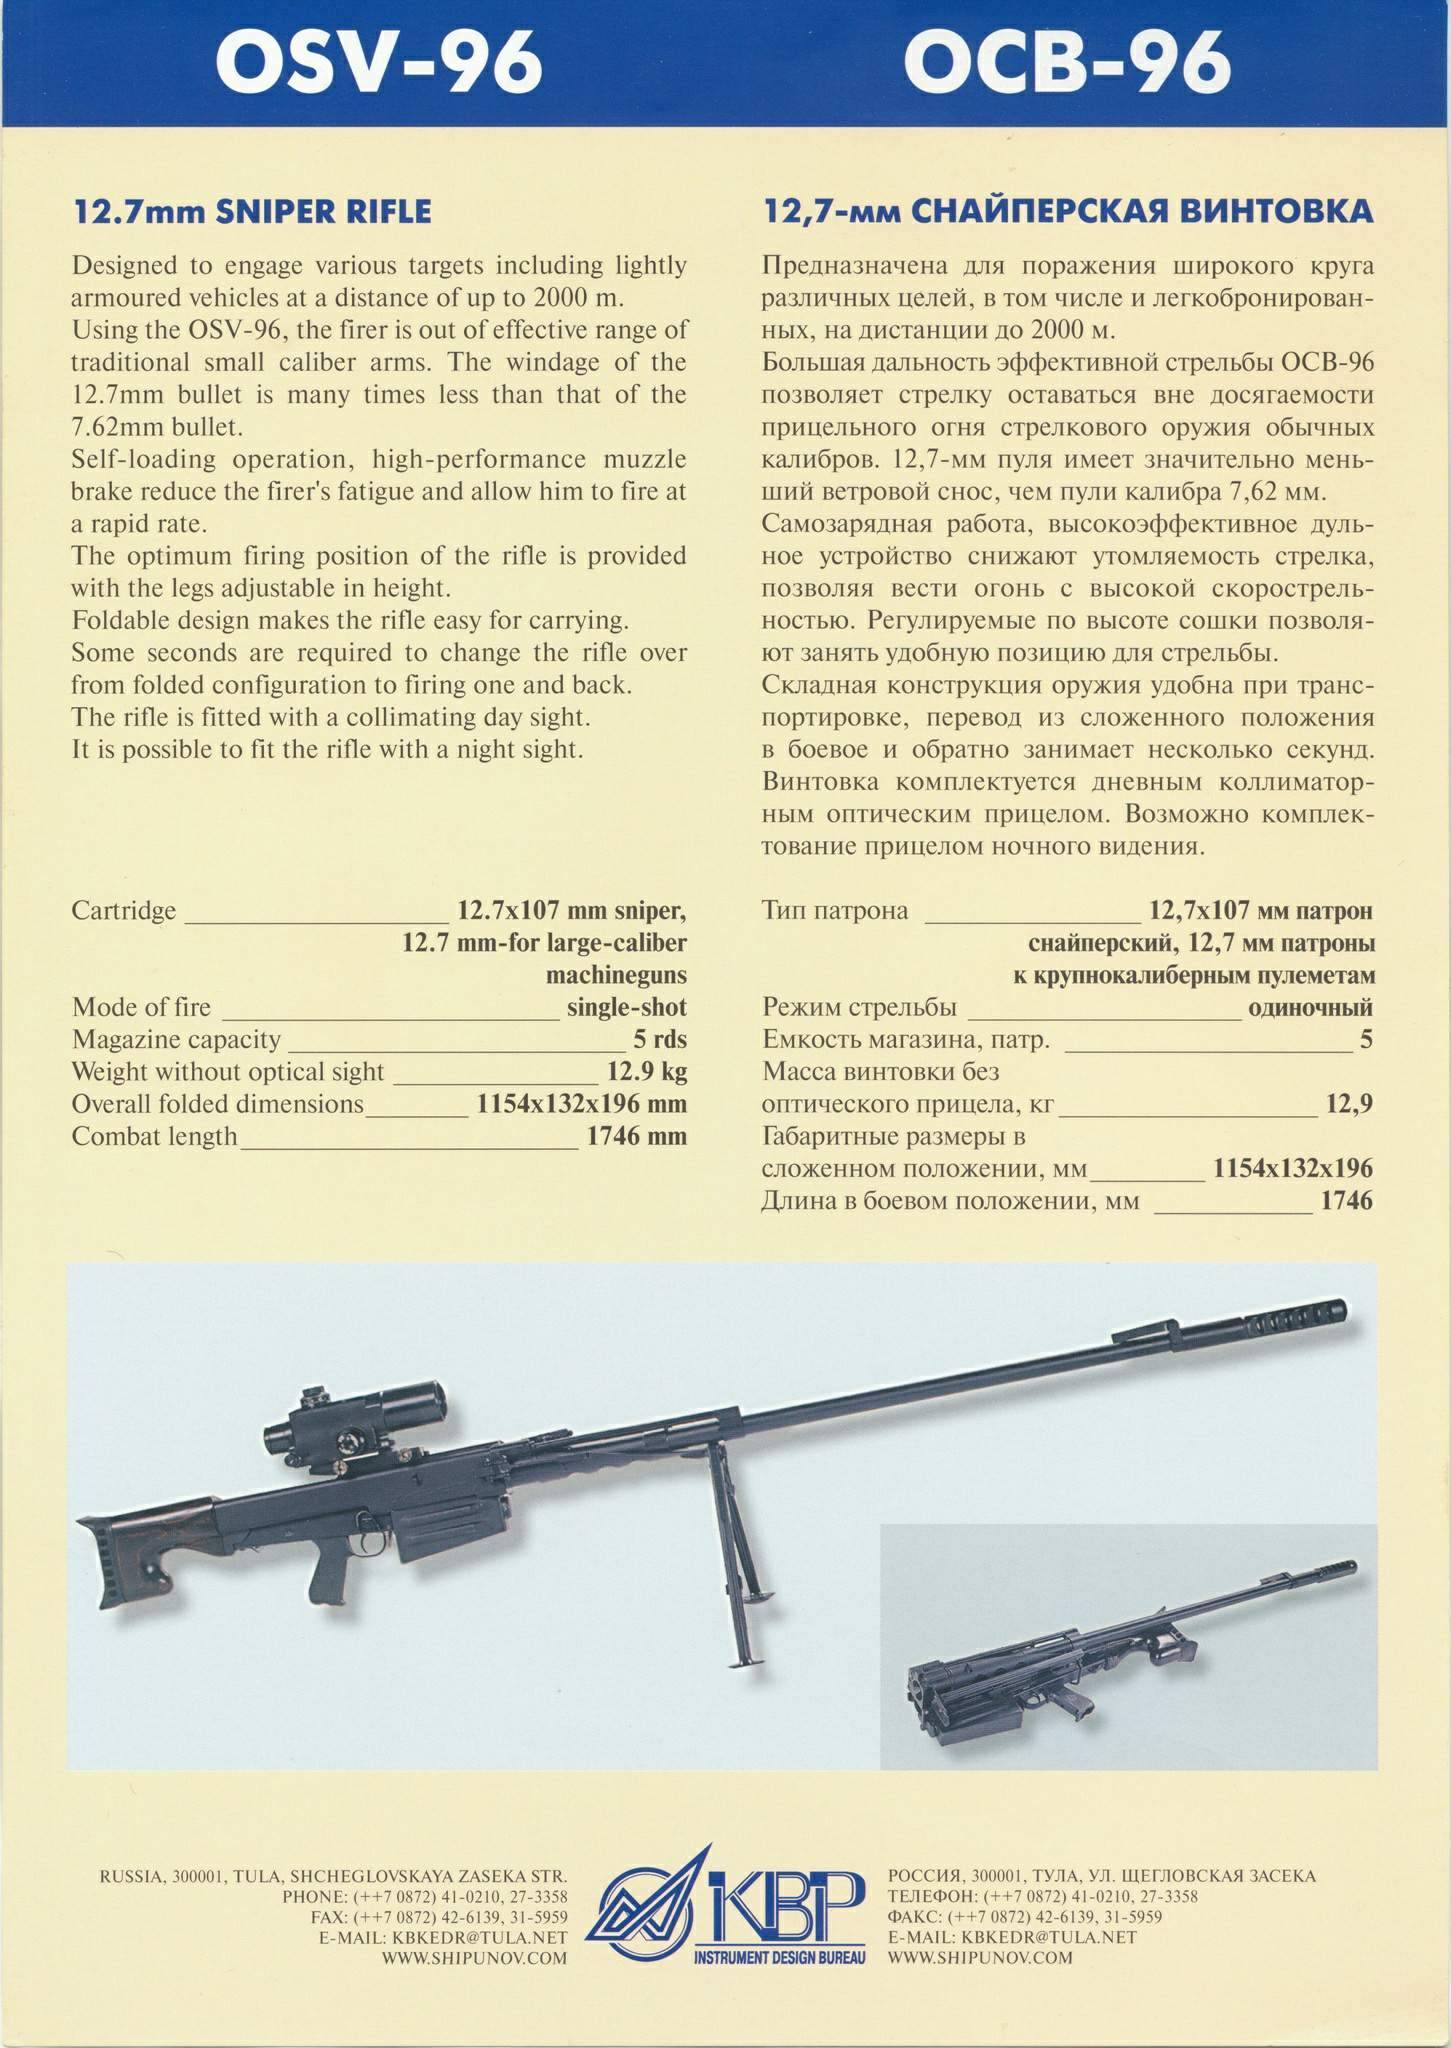 Снайперская винтовка ОСВ-96 «Взломщик» калибра 12,7